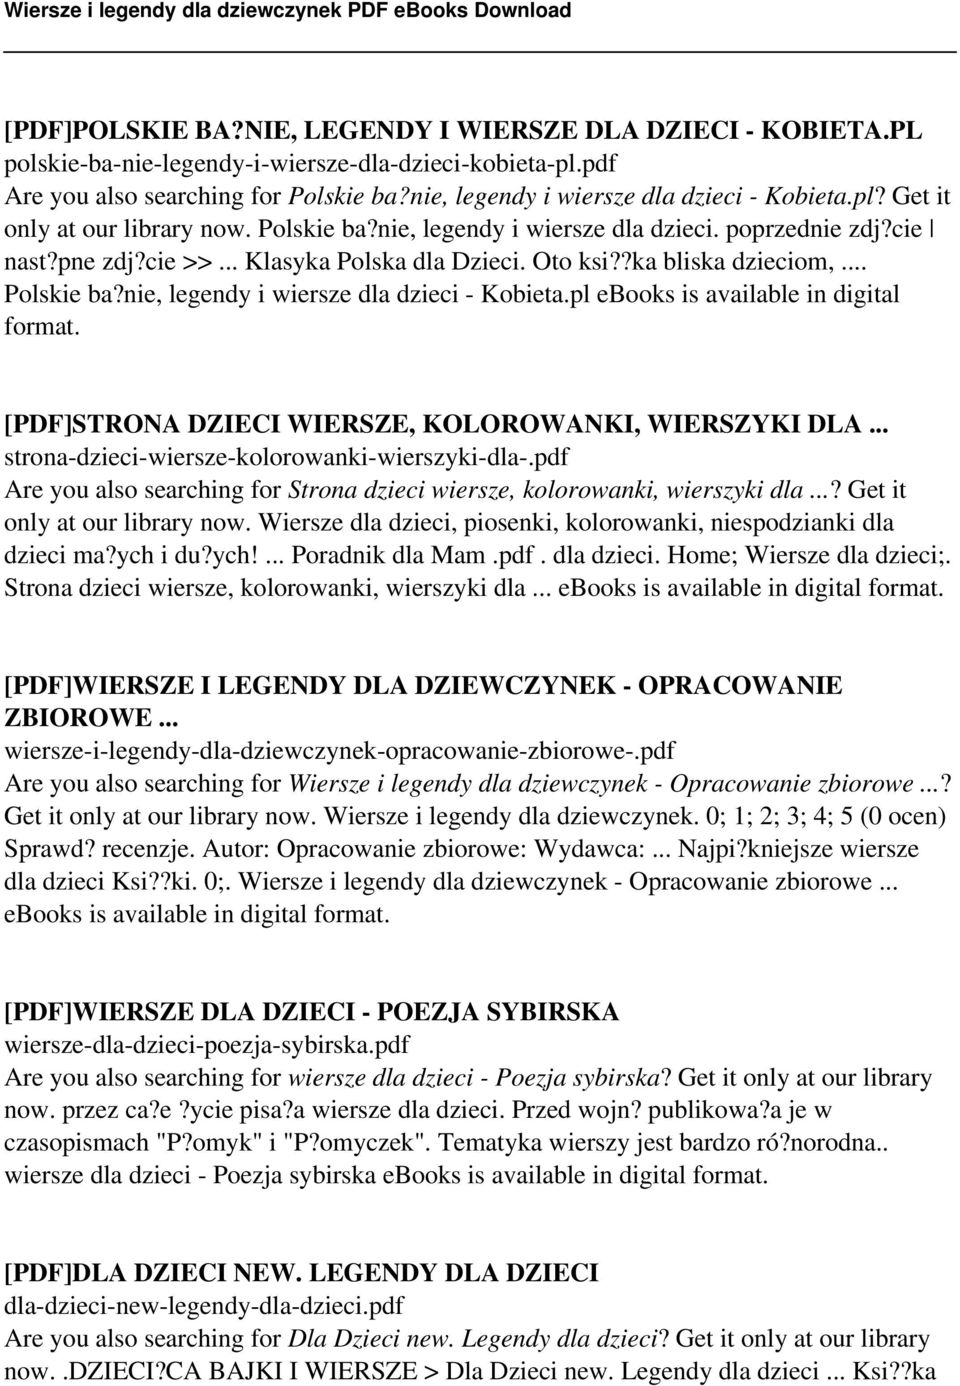 Oto ksi??ka bliska dzieciom,... Polskie ba?nie, legendy i wiersze dla dzieci - Kobieta.pl ebooks is available in digital format. [PDF]STRONA DZIECI WIERSZE, KOLOROWANKI, WIERSZYKI DLA.